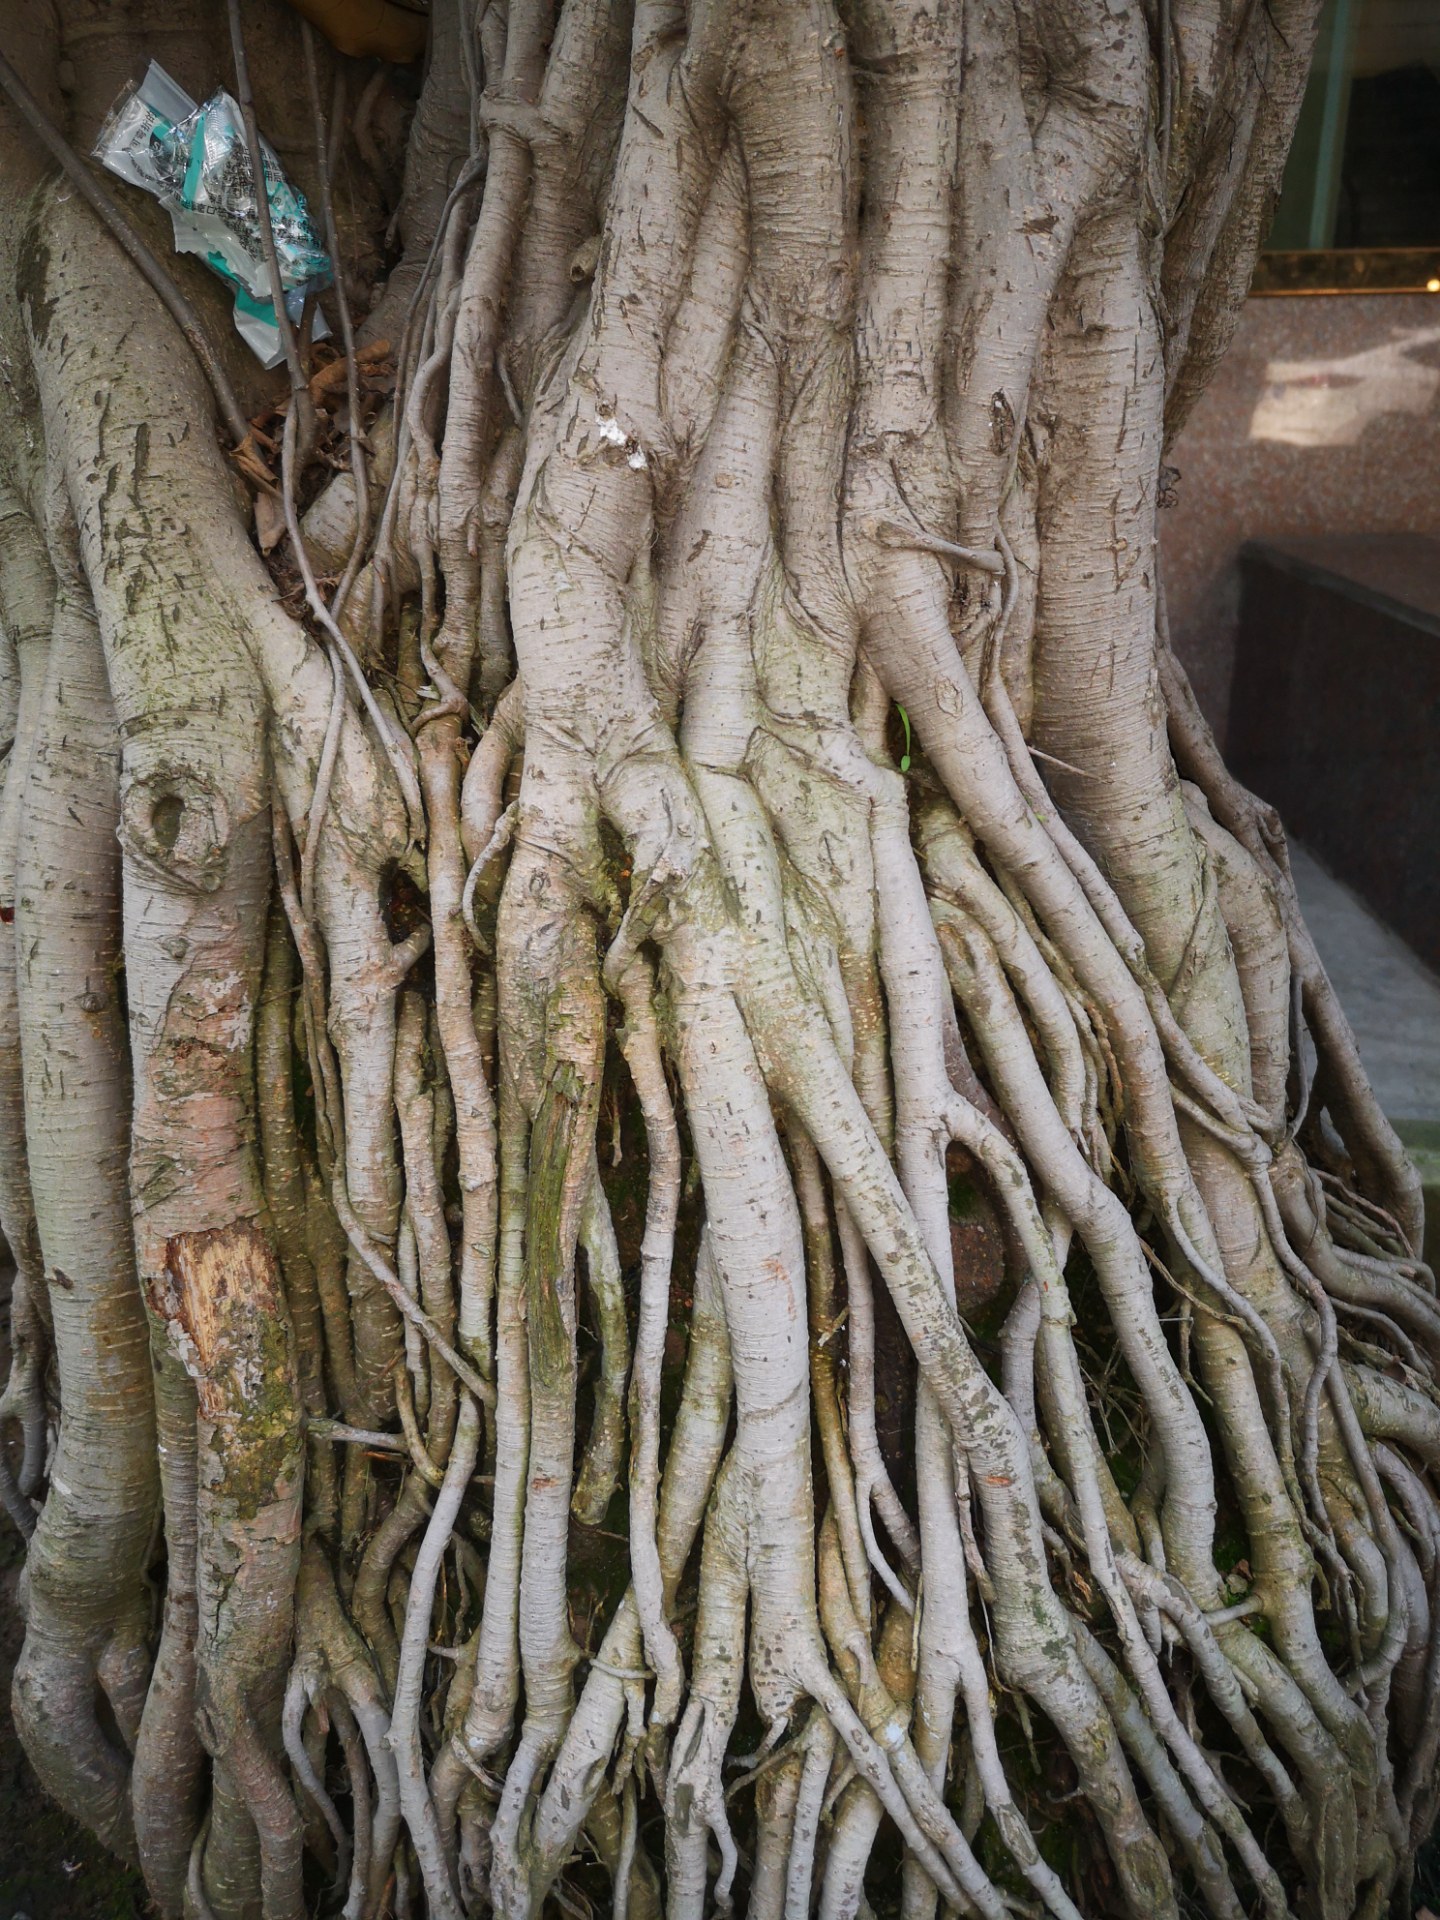 叶子稀少,造型不理想;但这树的根造型特别,又细又多,根系非常发达真是